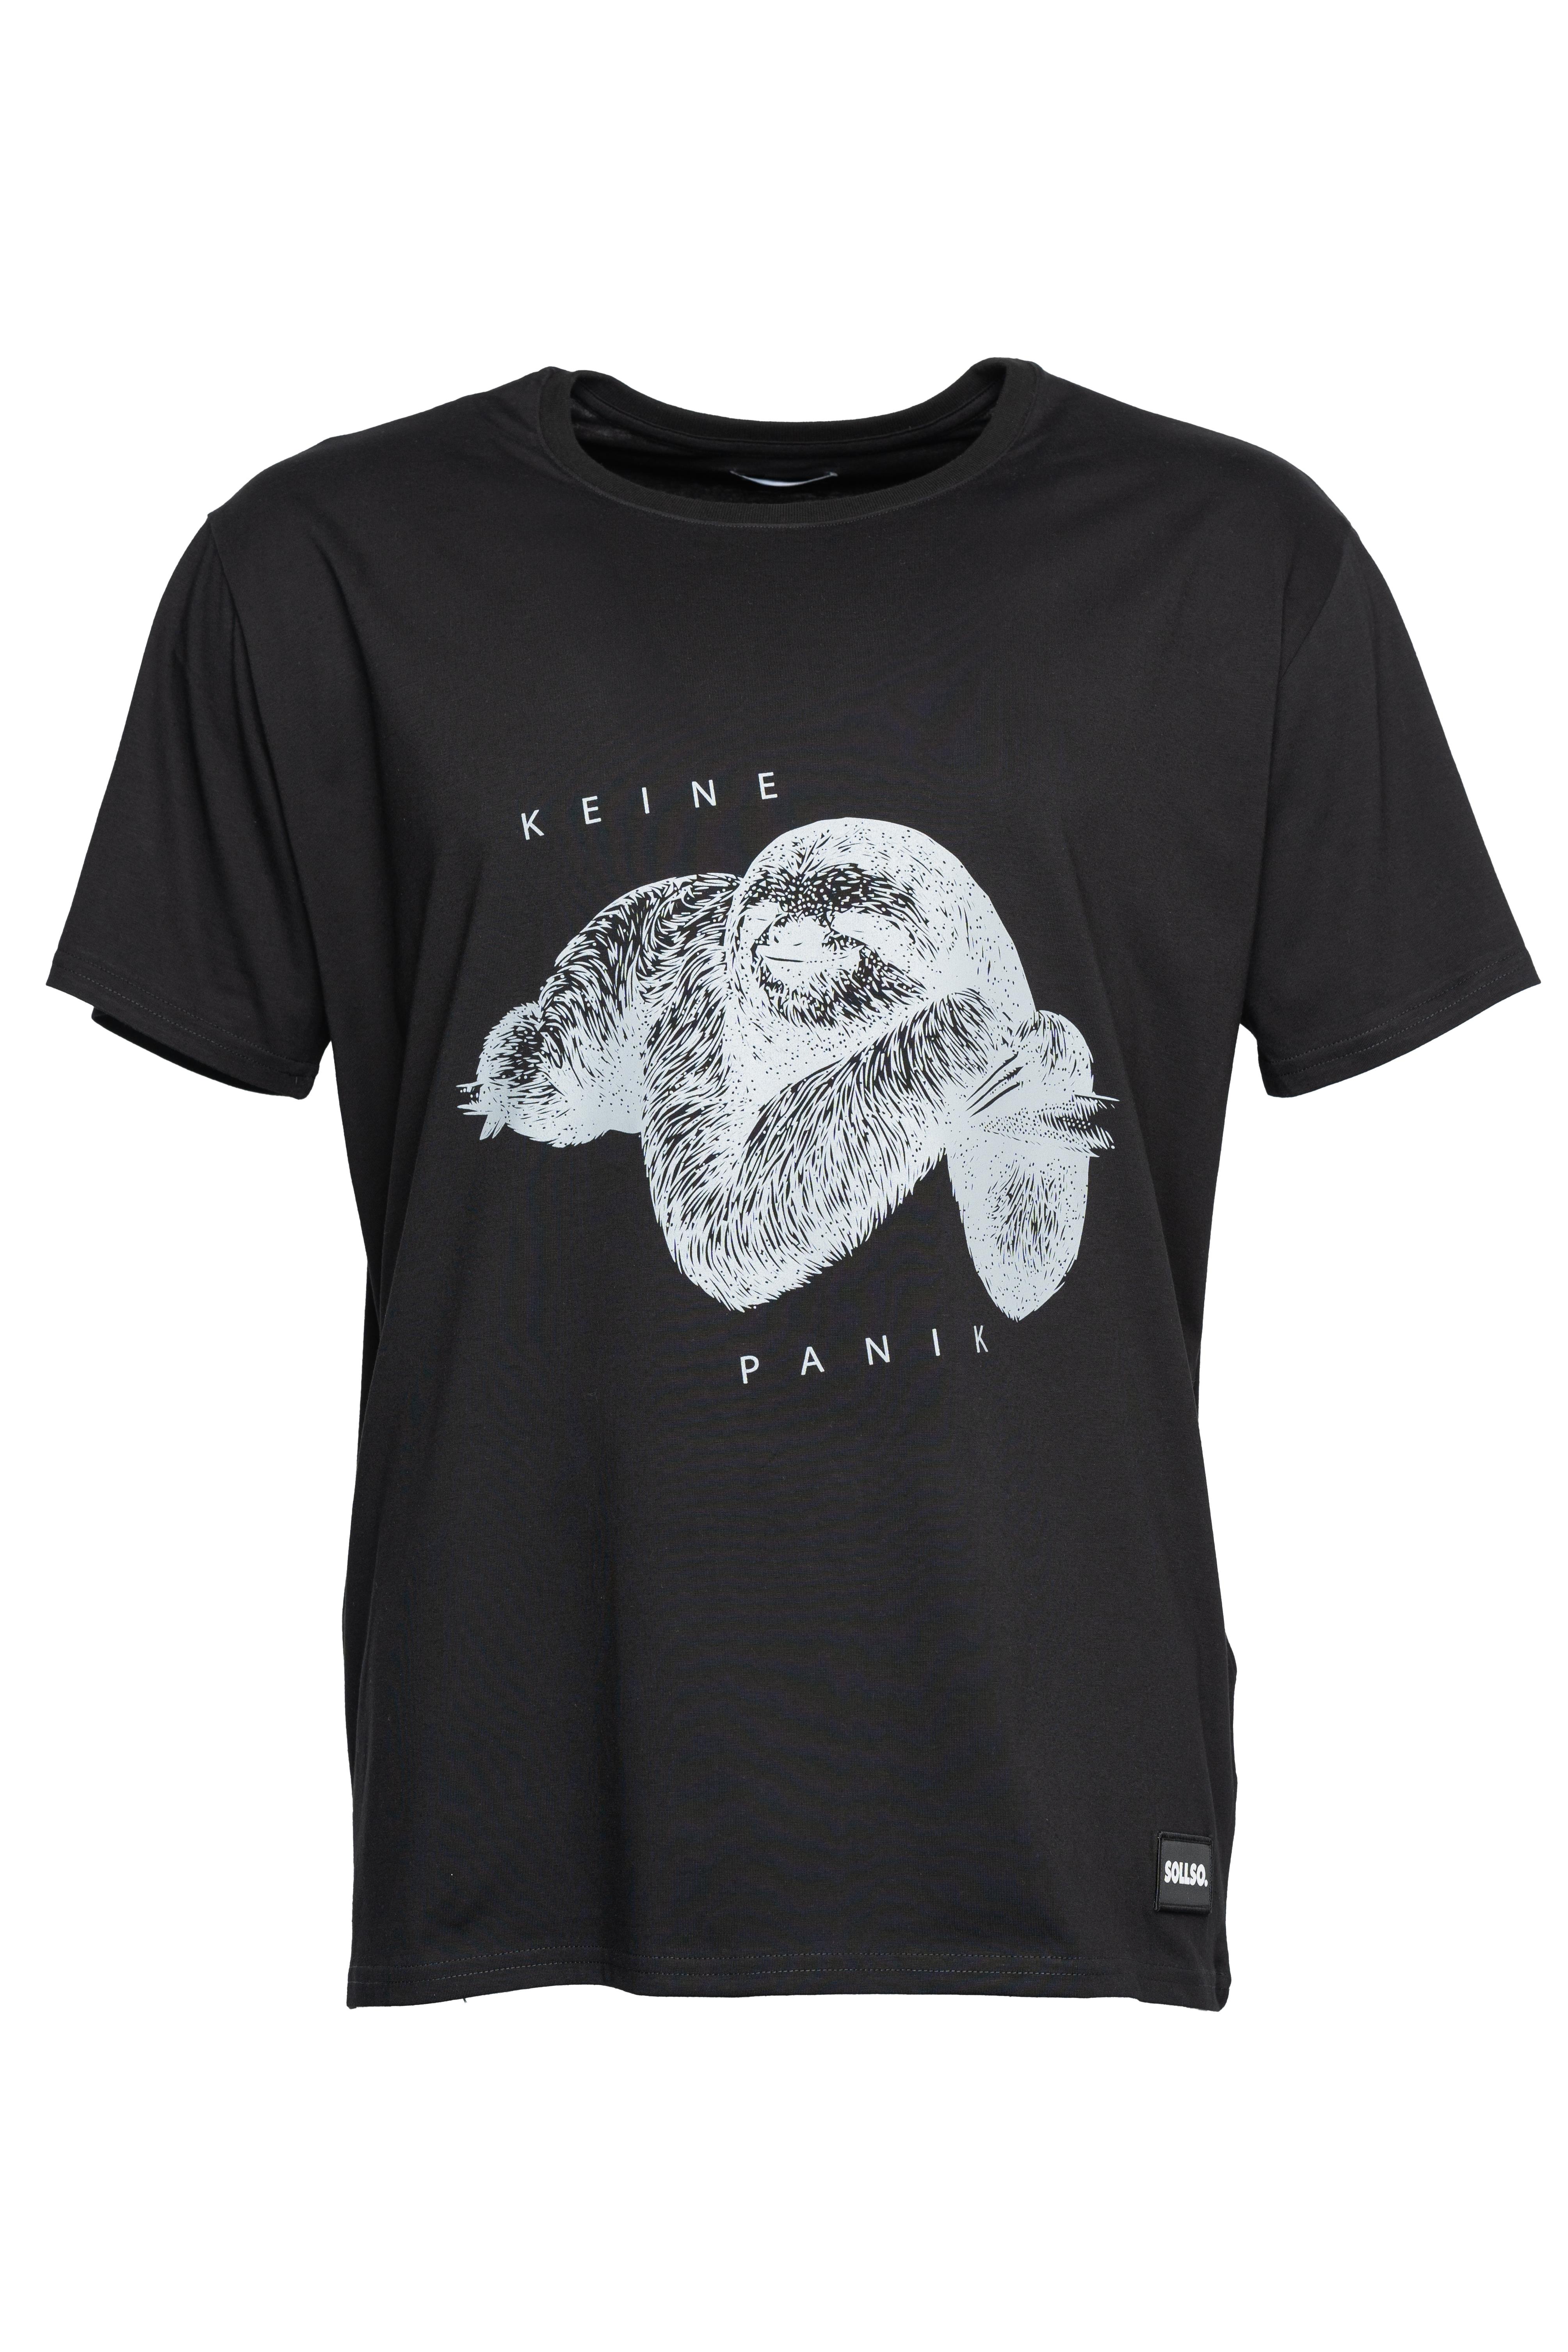 SOLLSO. T-Shirt "Keine Panik Faultier", Farbe Dark Black, Größe XL